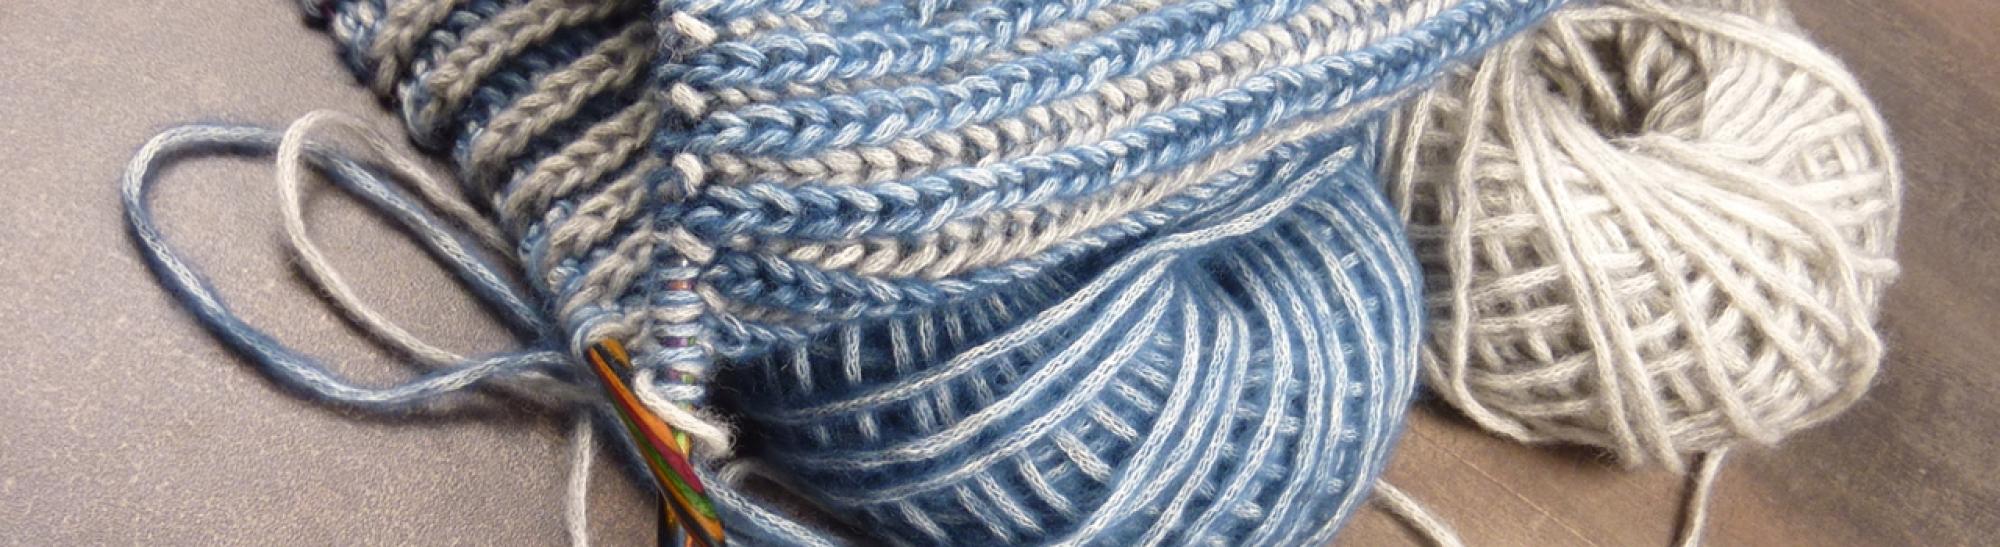 Čepice Cotton-Merino pletená vzorem brioche